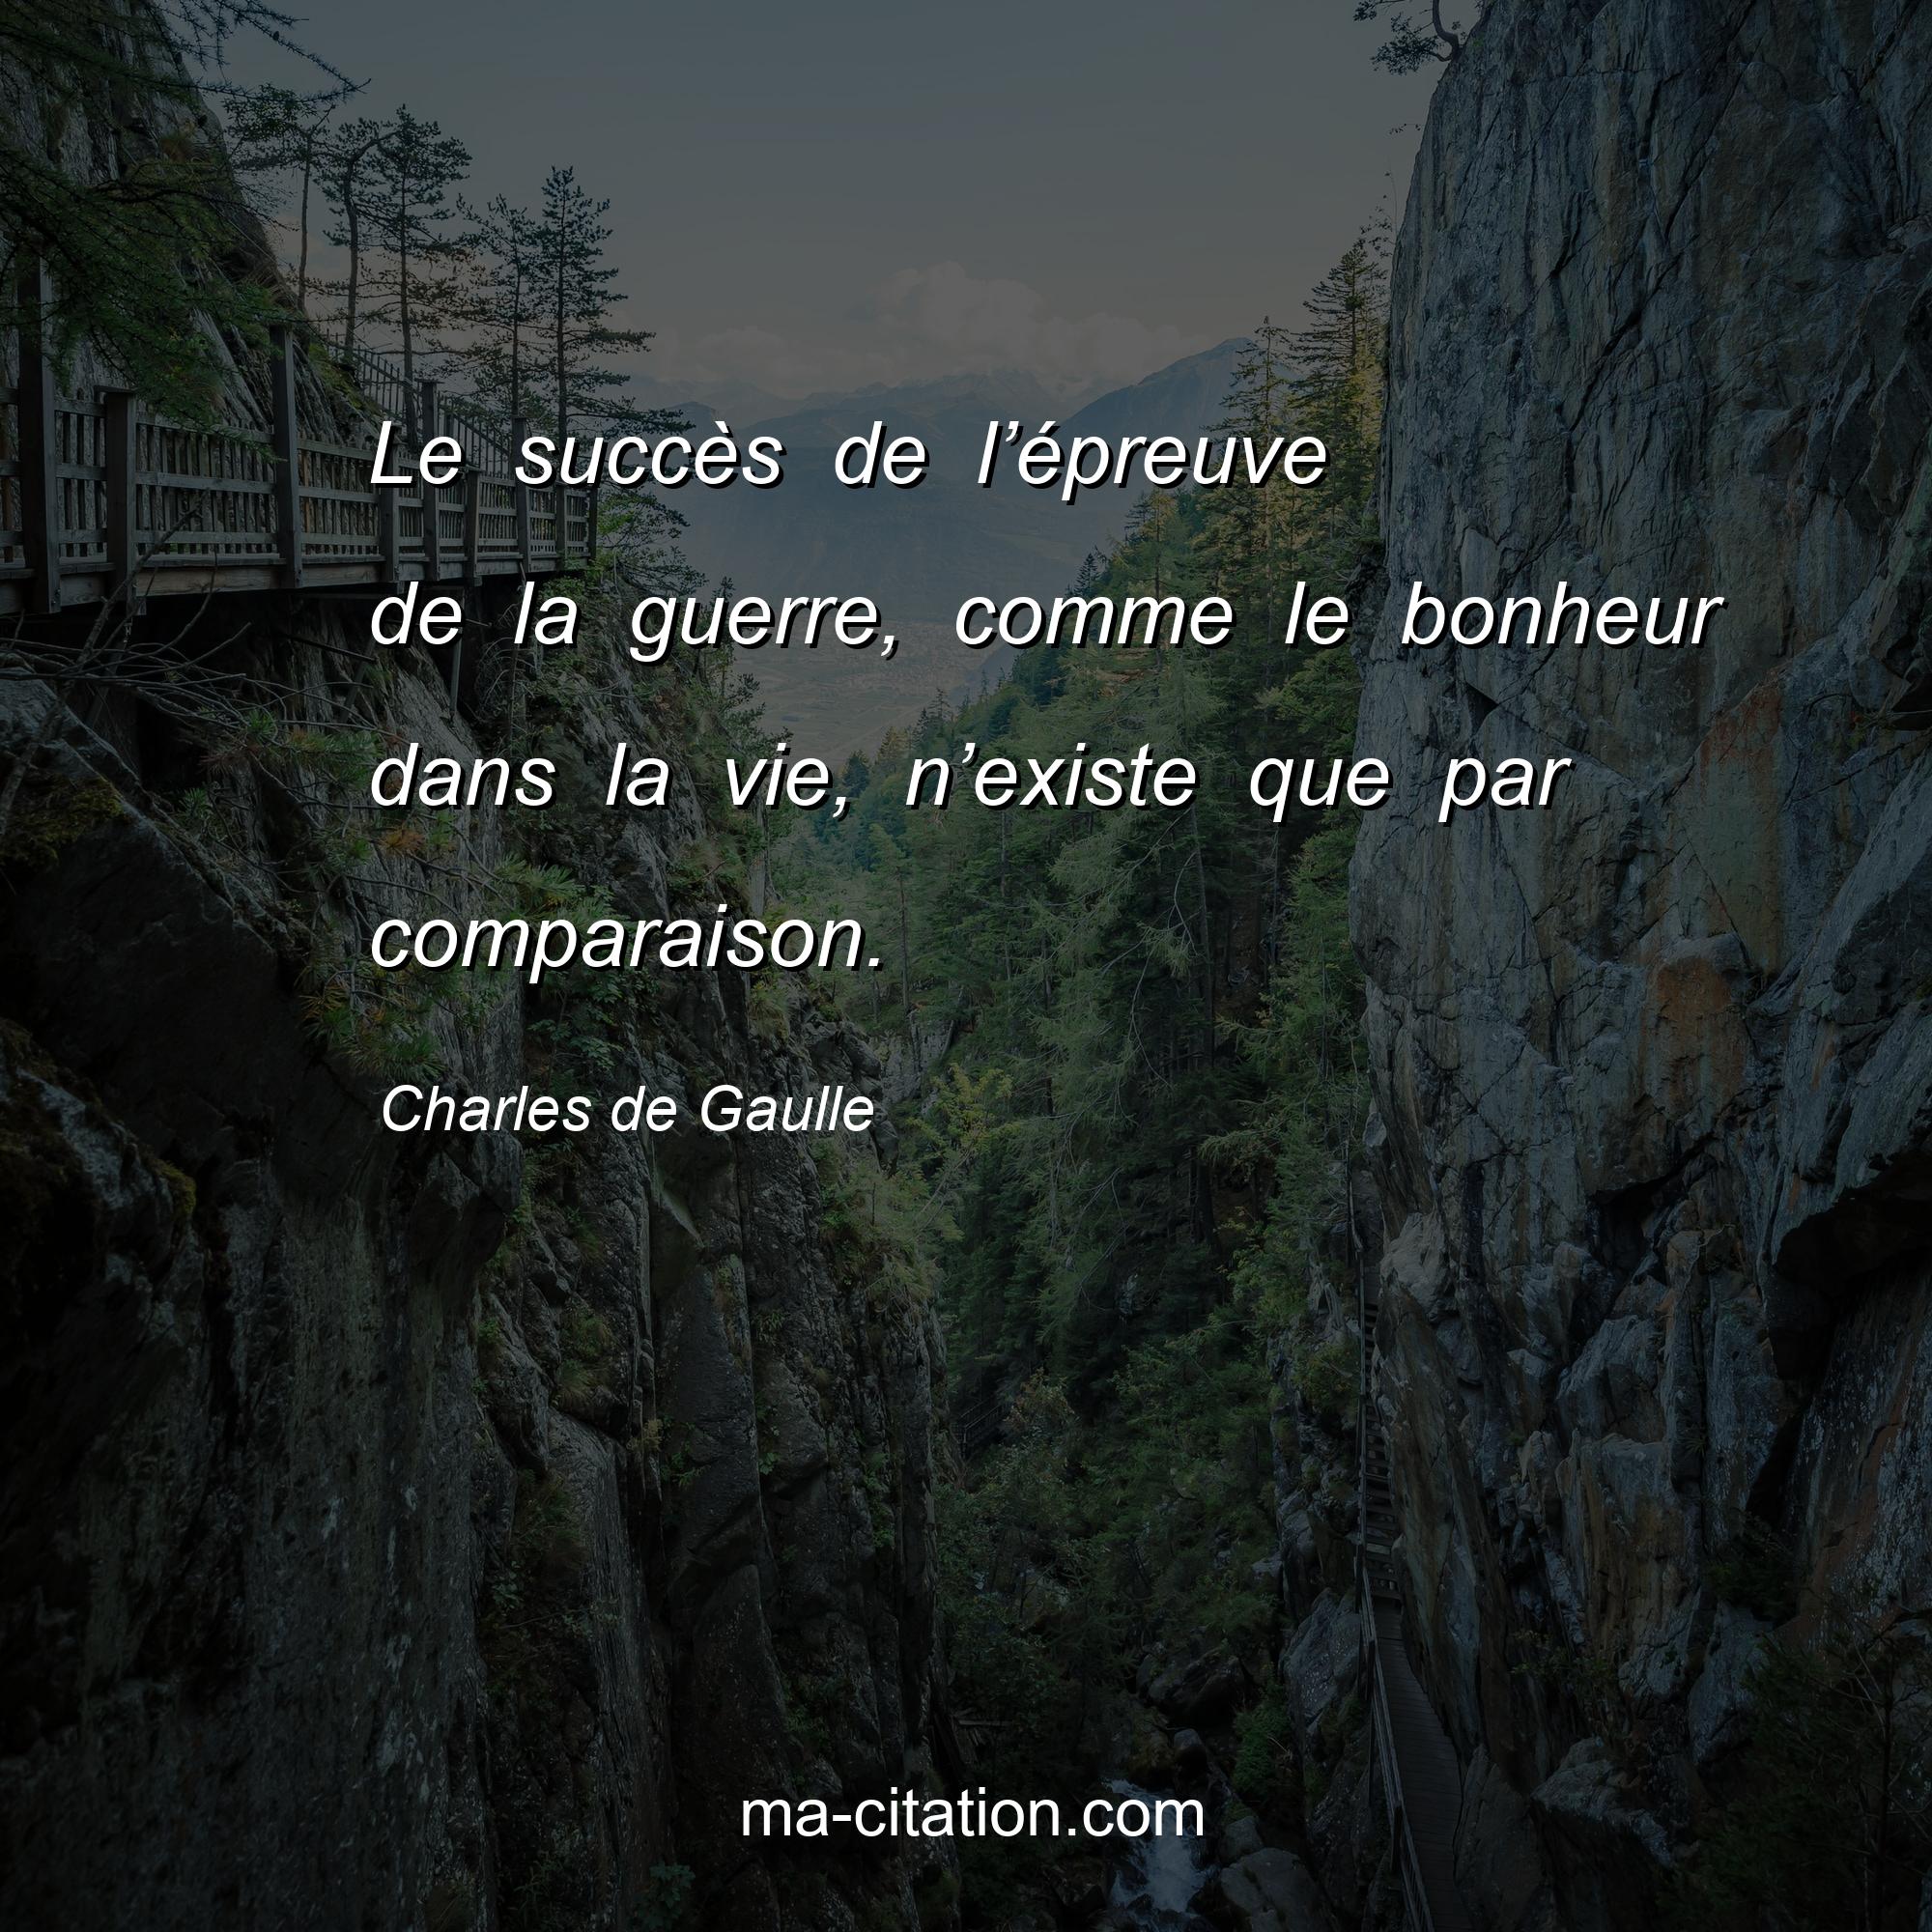 Charles de Gaulle : Le succès de l’épreuve de la guerre, comme le bonheur dans la vie, n’existe que par comparaison.